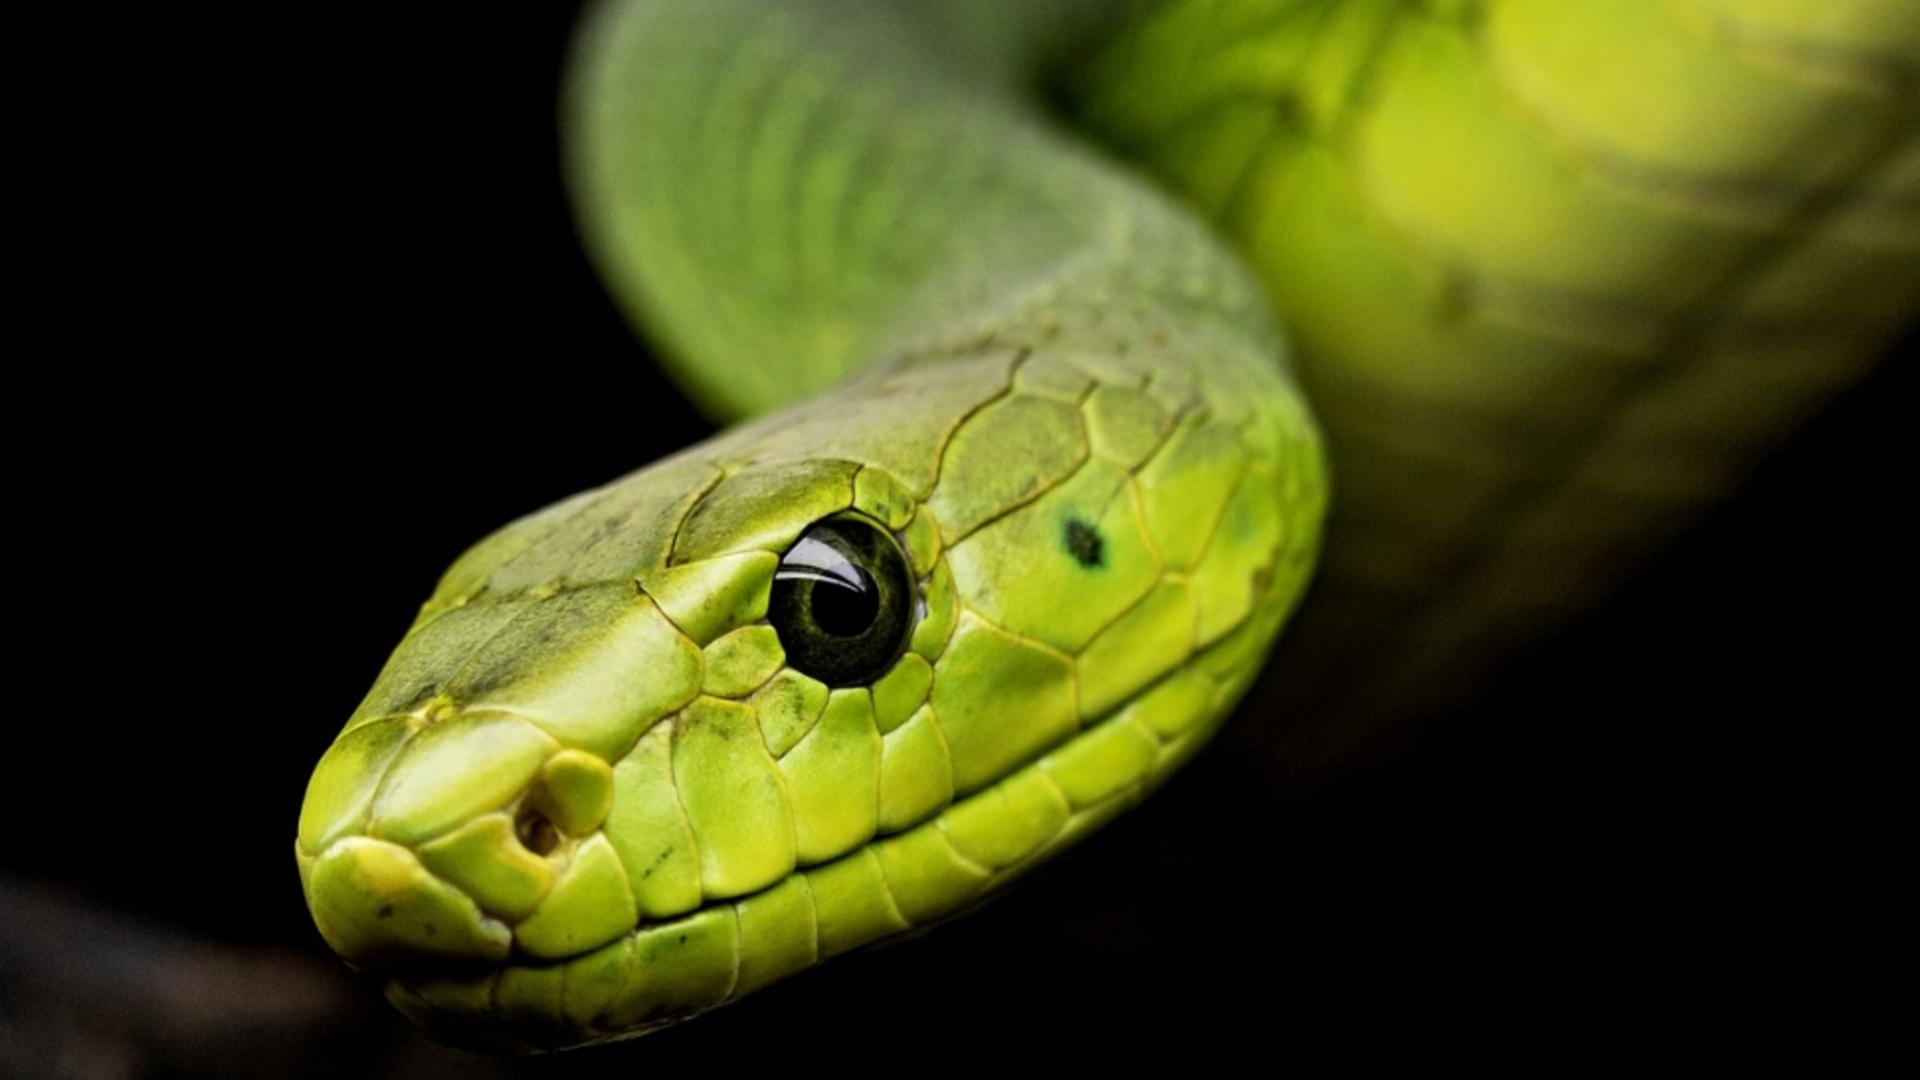 De ce le e frică șerpilor, ca să știm cu ce să-i punem pe fugă